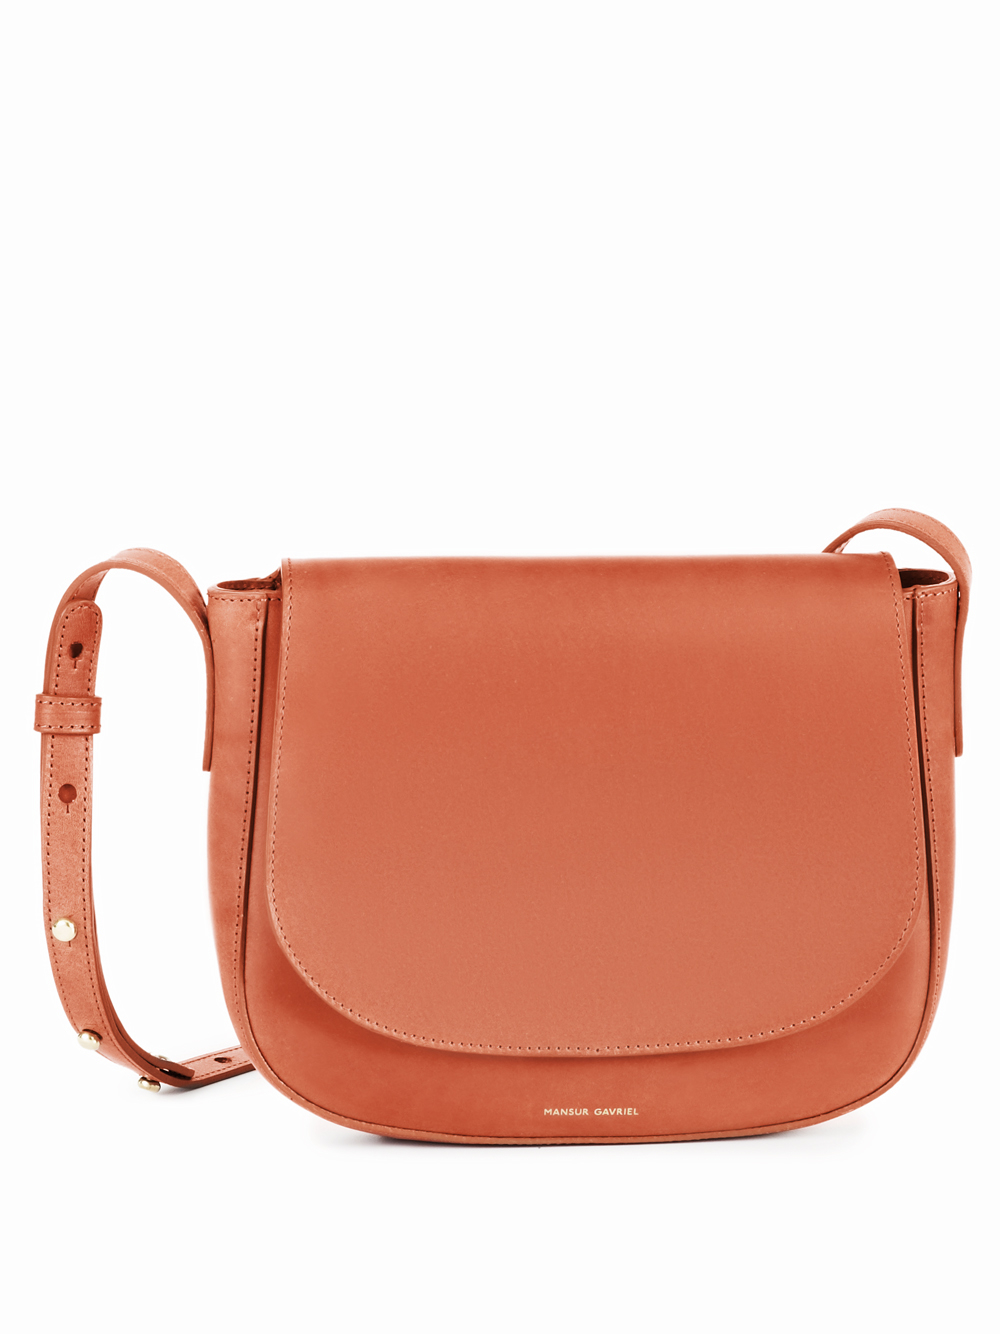 Mansur gavriel Leather Cross-Body Bag in Orange | Lyst